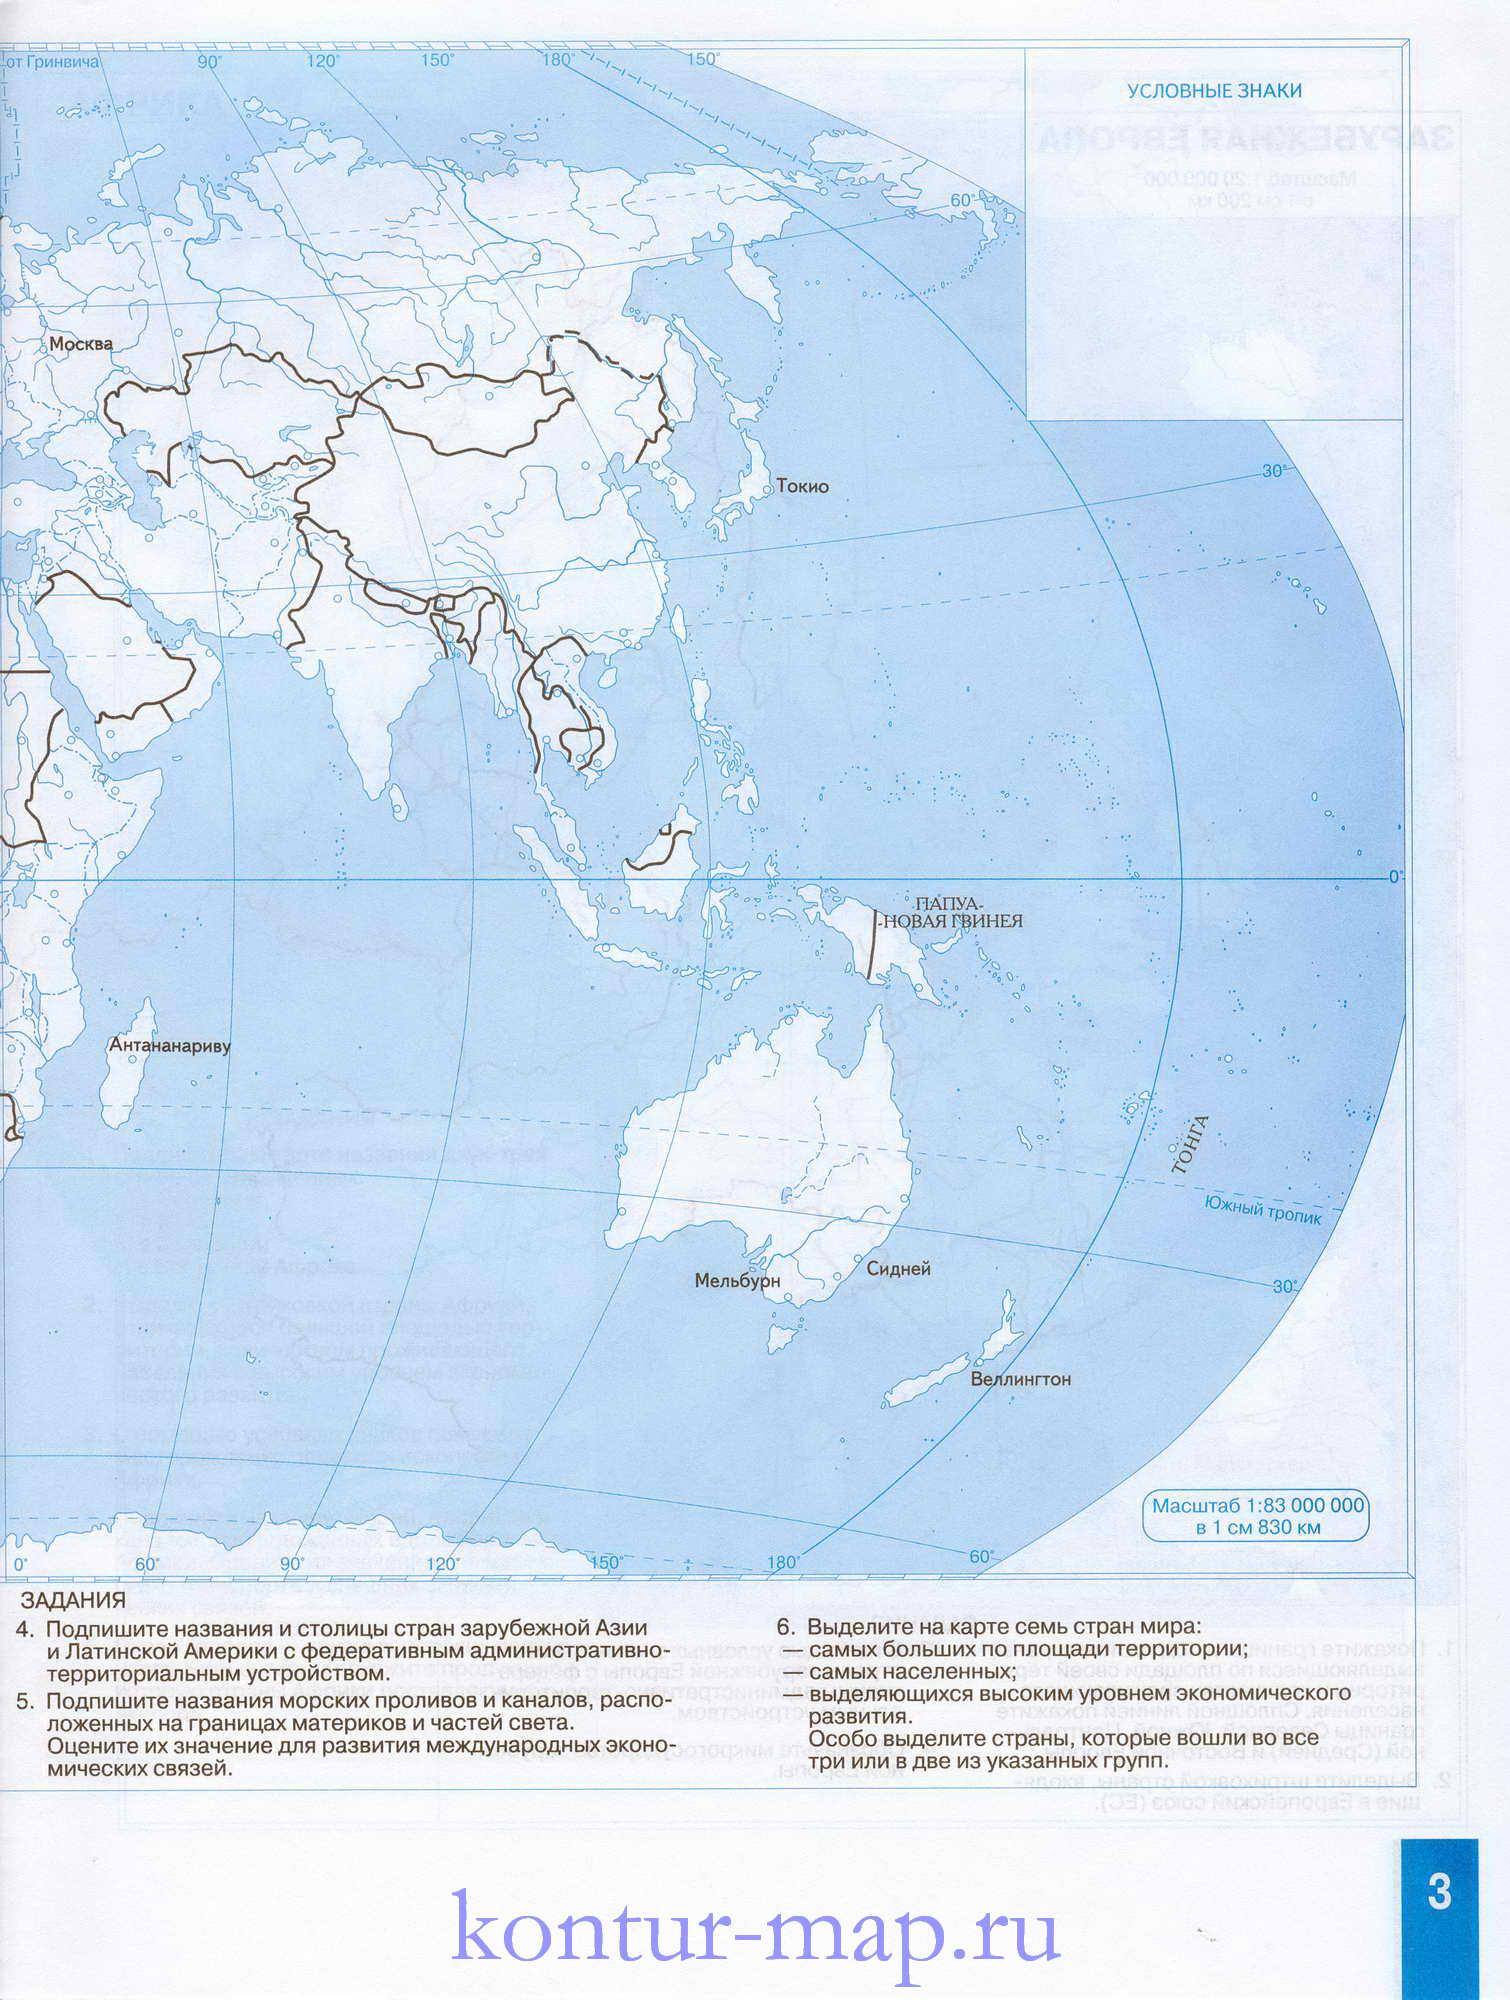 Контурная карта мира с заданиями. Контурная карта мира - география 10класс. На врезке контурная карта Европы,